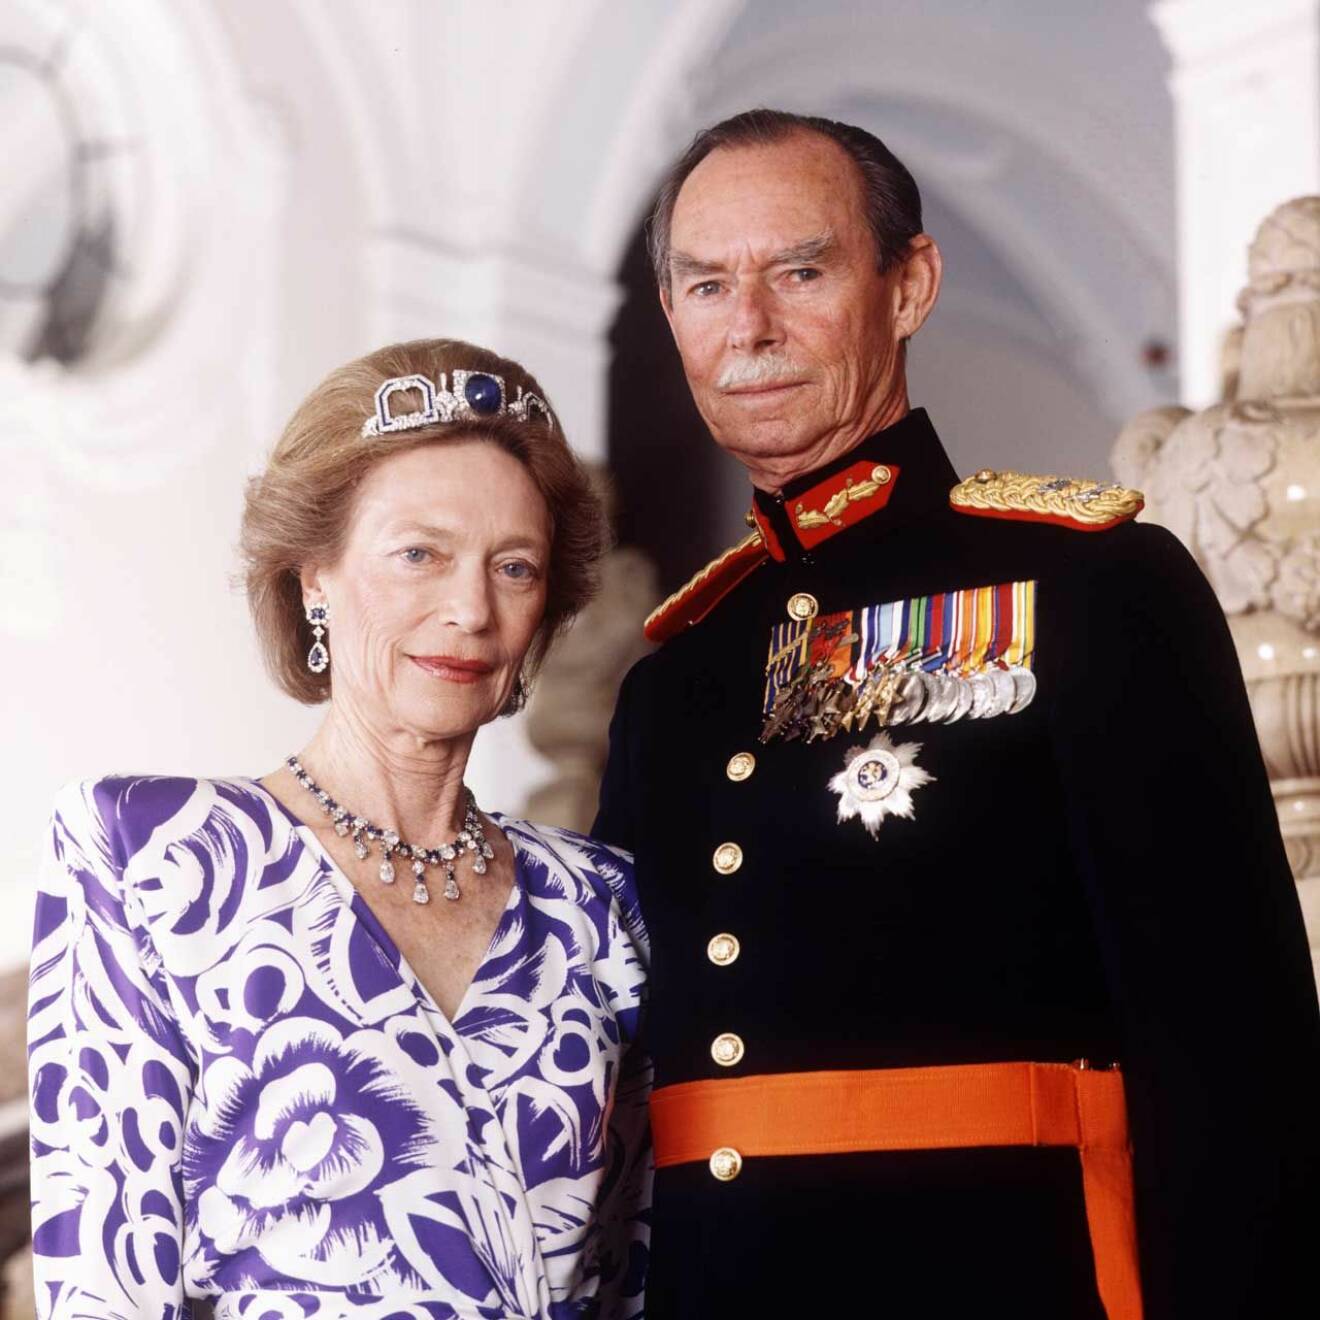 Storhertig Jean med sin Josephine-Charlotte, som var dotter till Belgiens svenskfödda drottning Astrid.